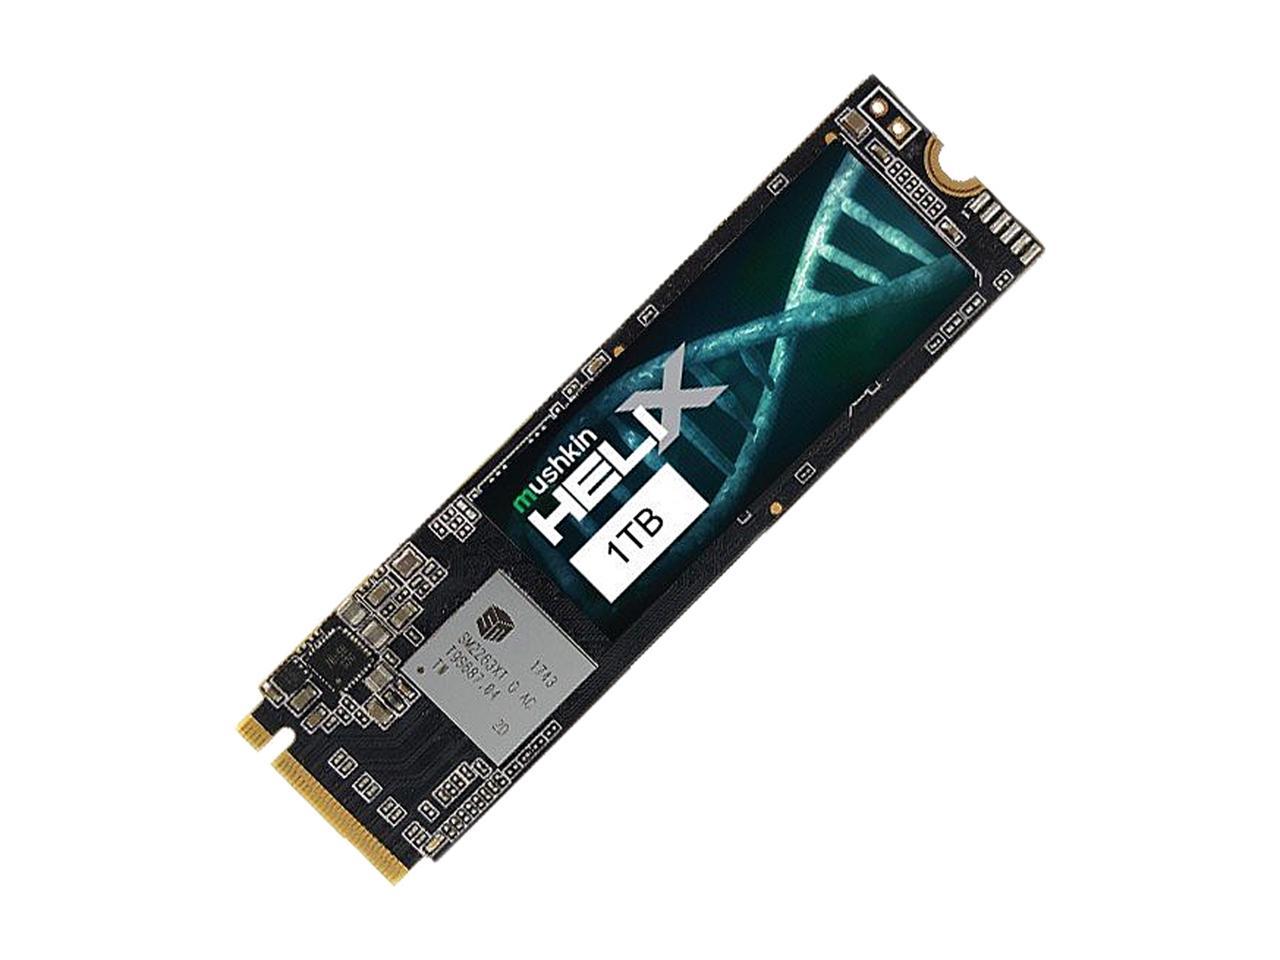 Mushkin Helix-L M.2 2280 1TB PCIe Gen3 x4 NVMe 1.3 3D TLC Internal Solid State Drive (SSD) MKNSSDHL1TB-D8